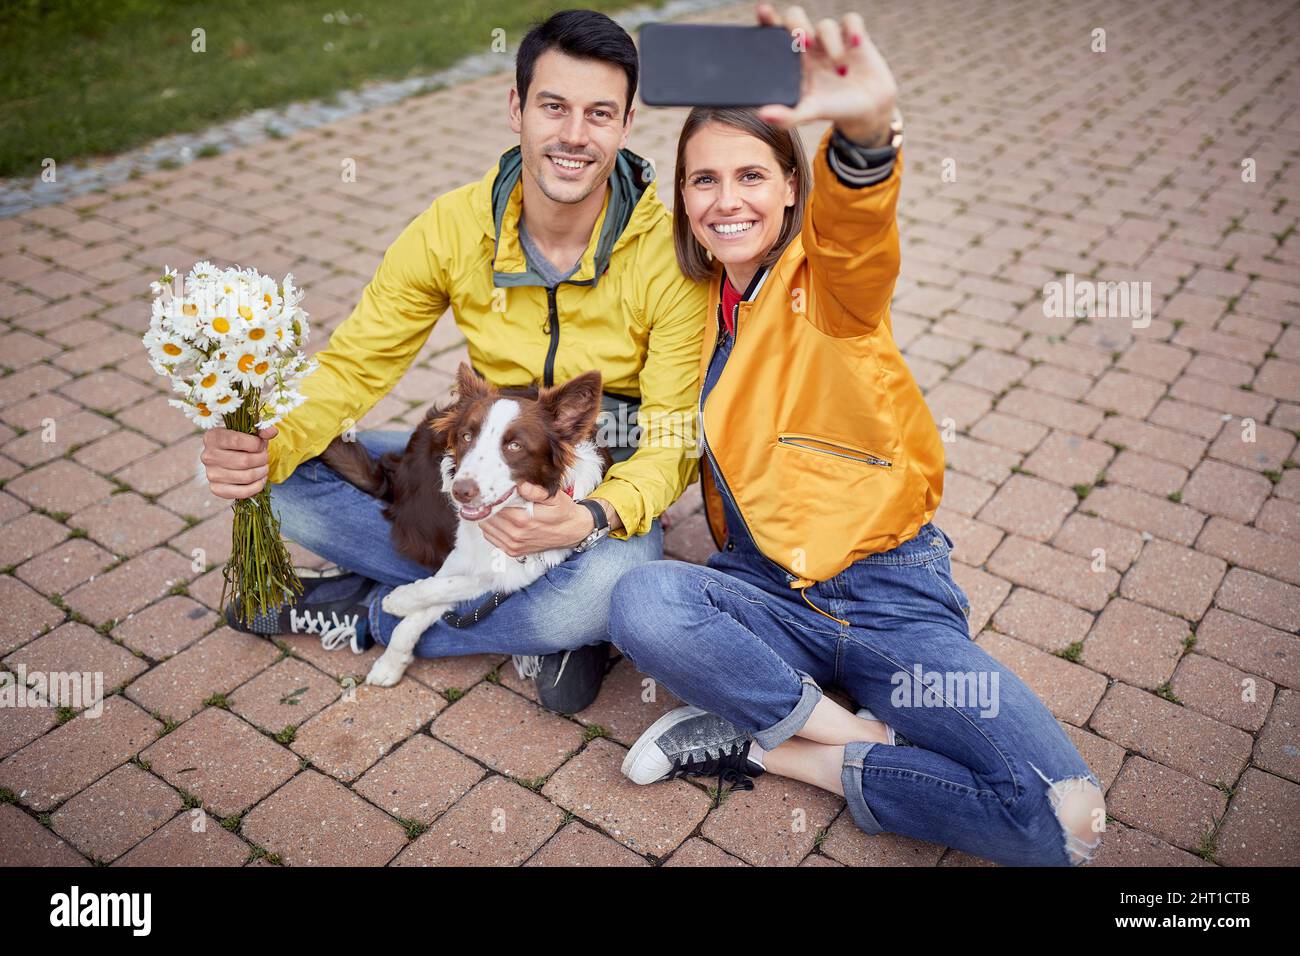 magnifique jeune femme en tenue décontractée avec un jean déchiré sur son genou prenant le selfie d'elle-même et un petit ami assis avec les jambes croisées et un chien dans t Banque D'Images